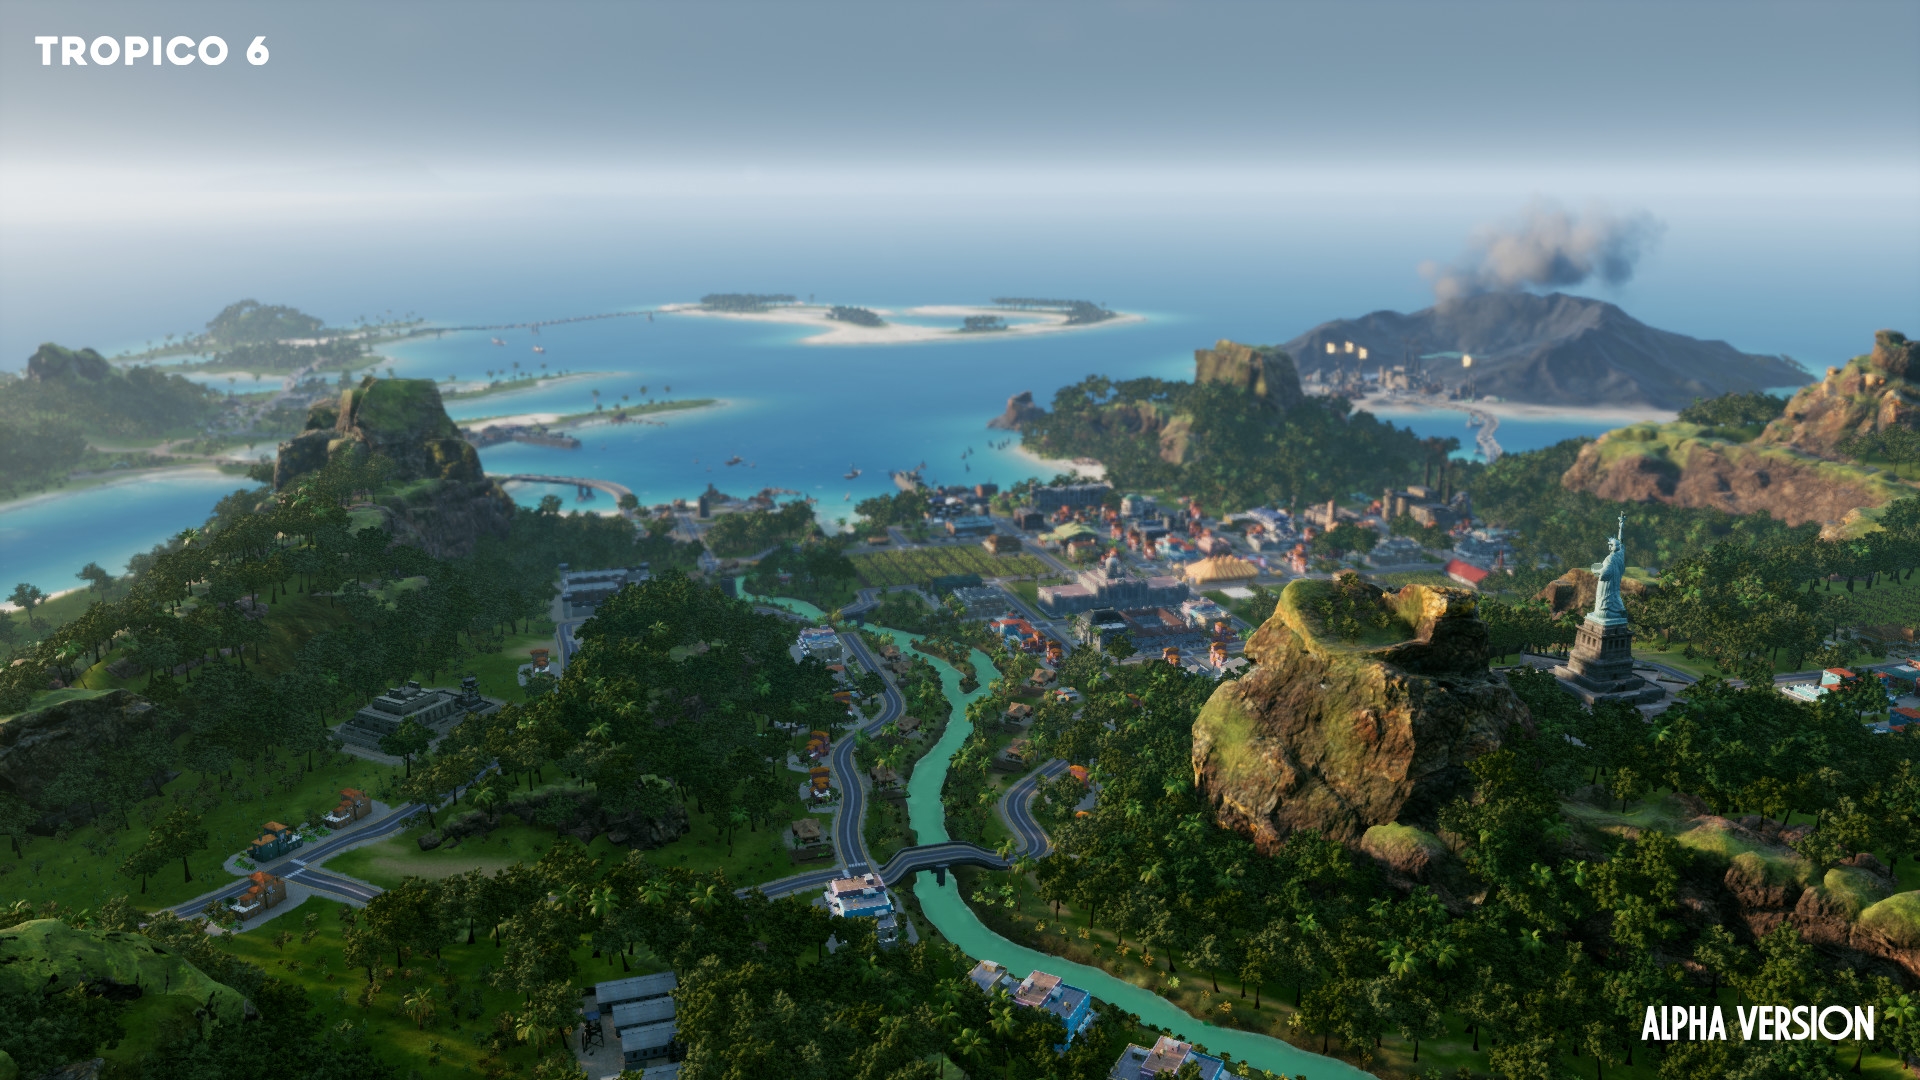 Скриншот из игры Tropico 6 под номером 6